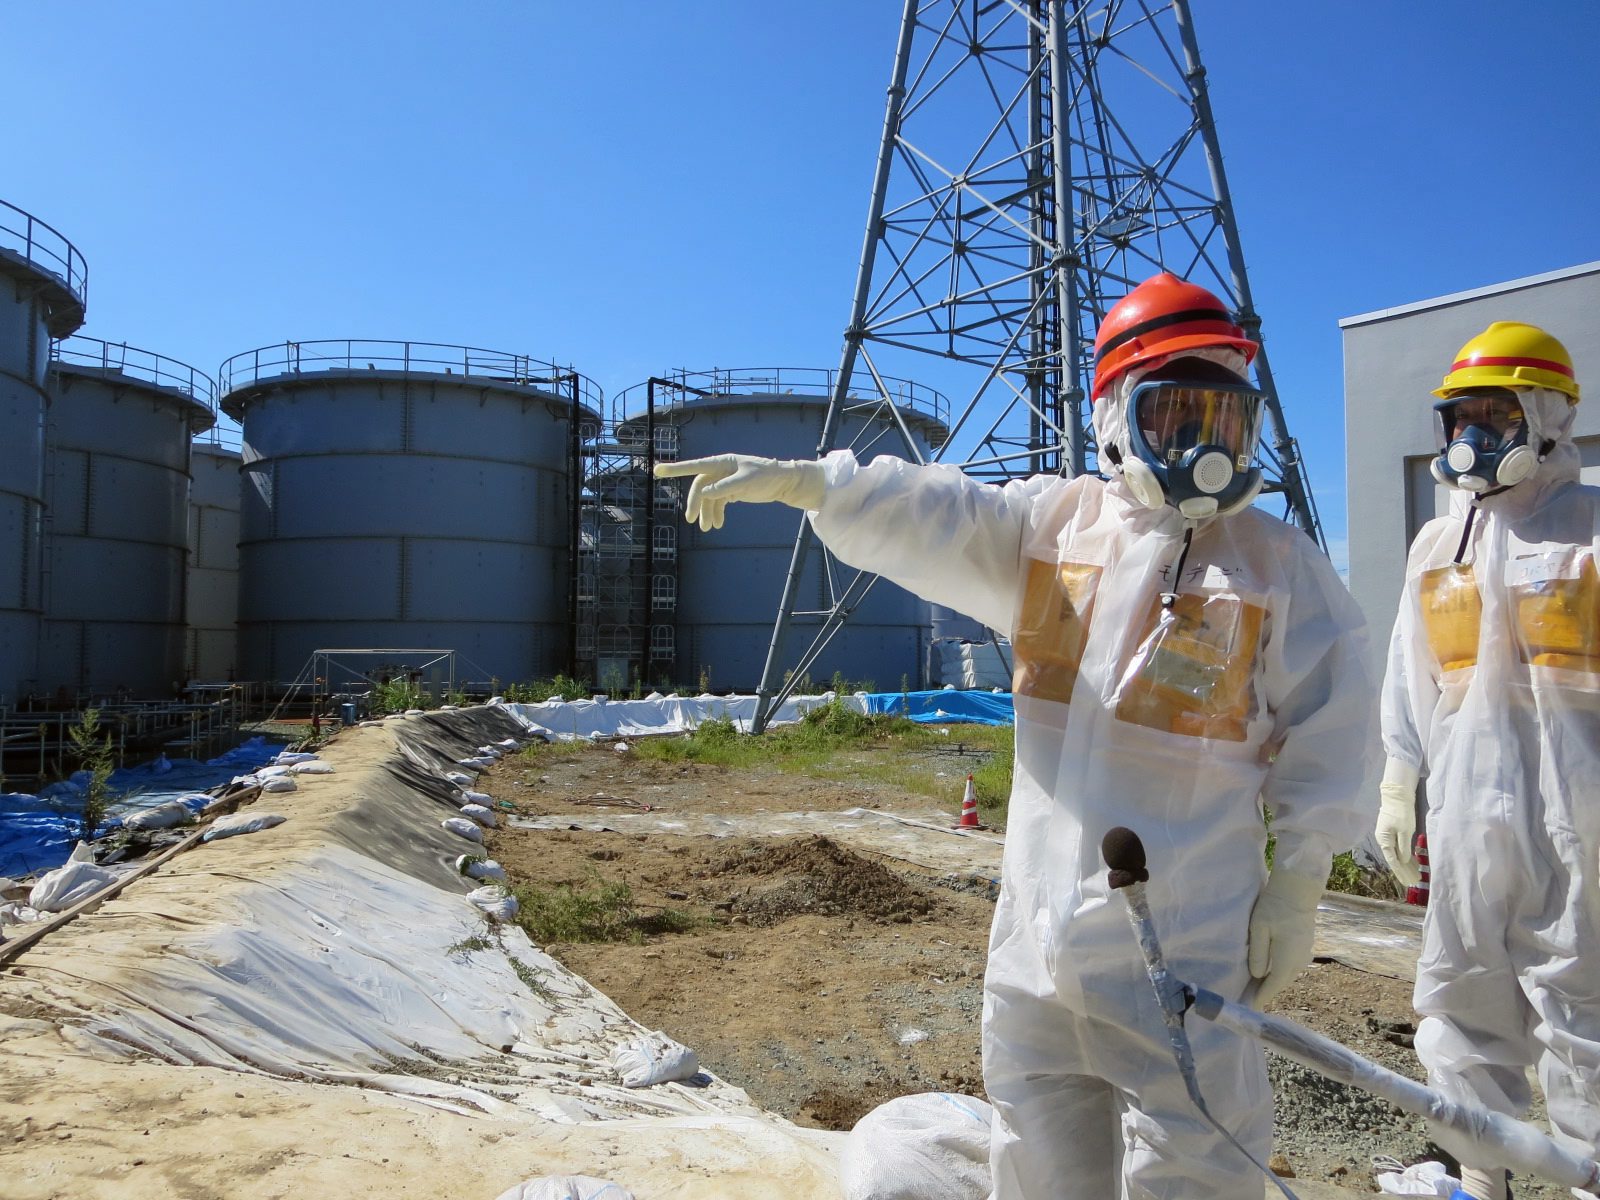 Detetadas fugas de água contaminada em Fukushima